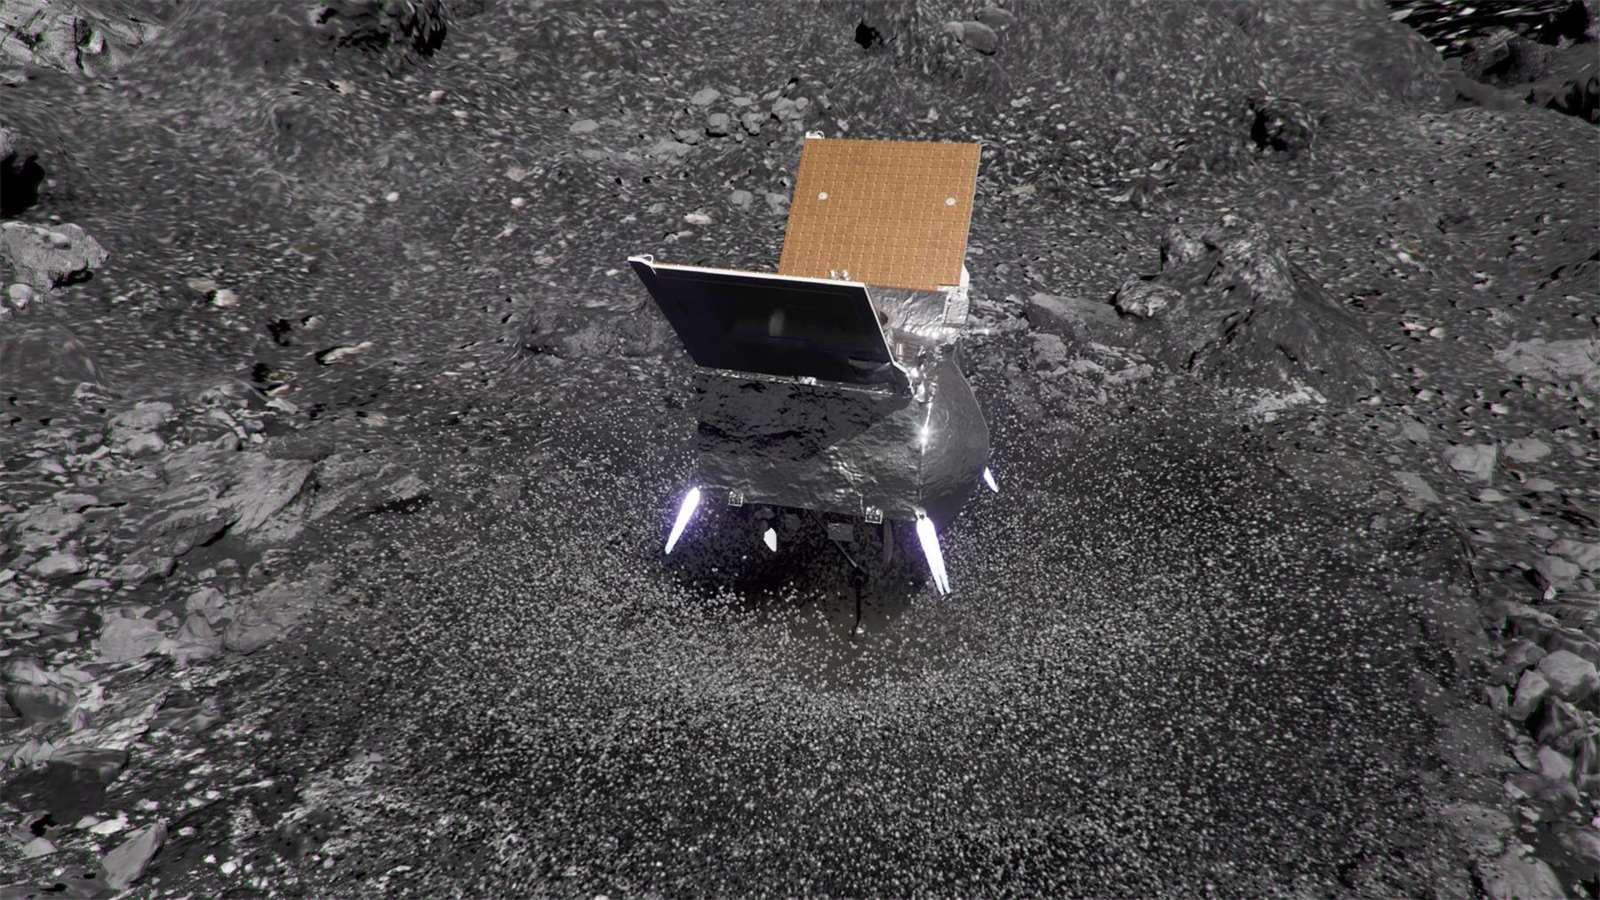 Galerie - Odvážná mise NASA s cílem získat vzorek z asteroidu Bennu málem skončila bizarní katastrofou – VTM.cz